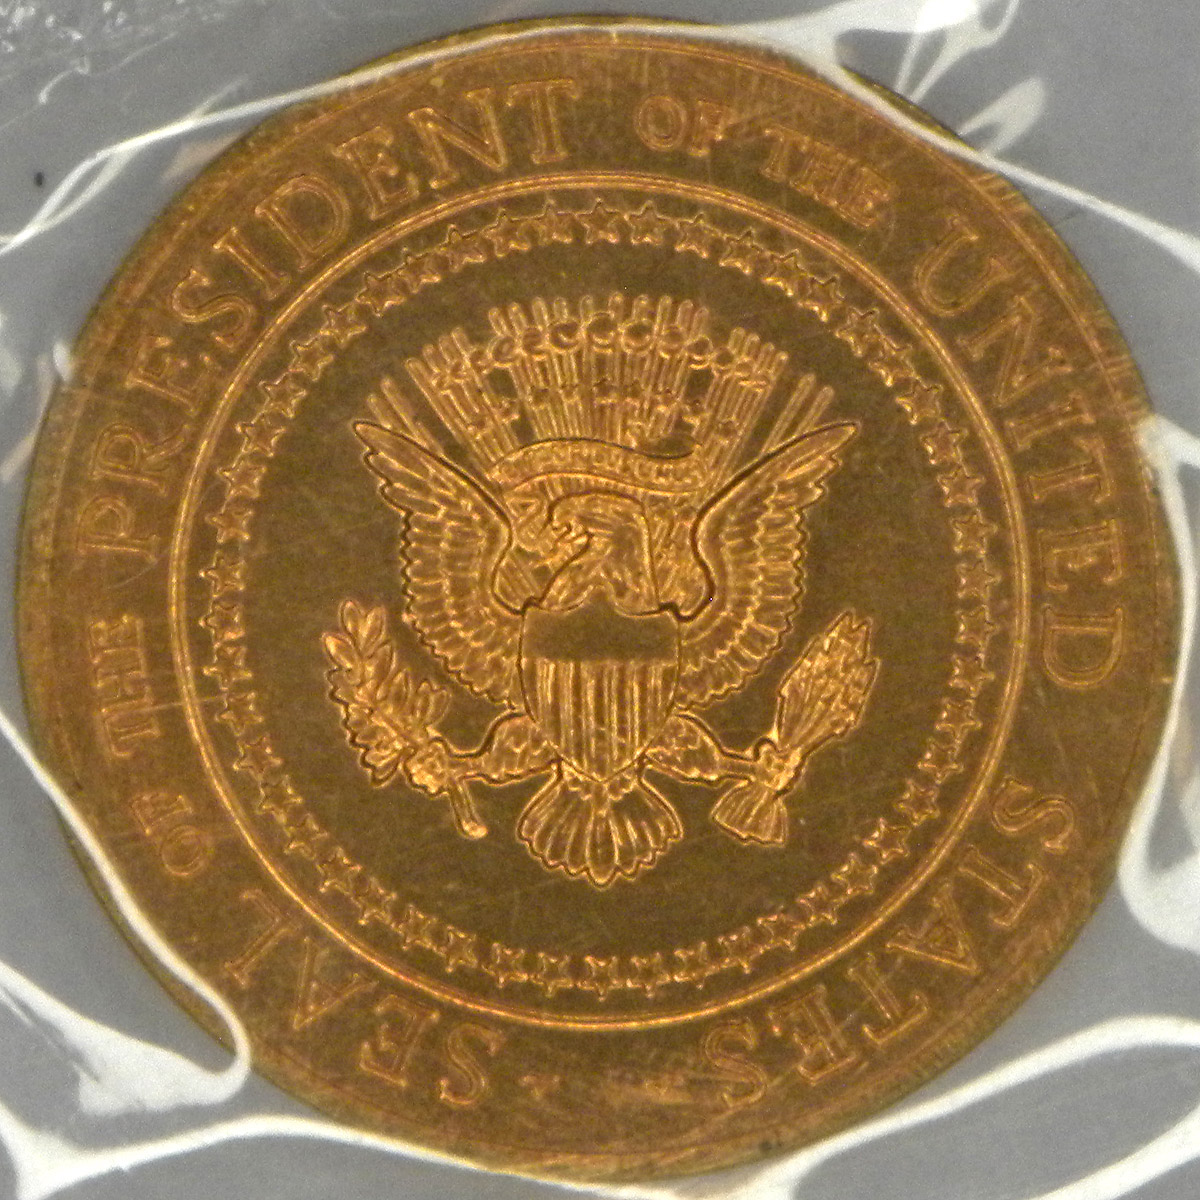 White House medal (reverse)